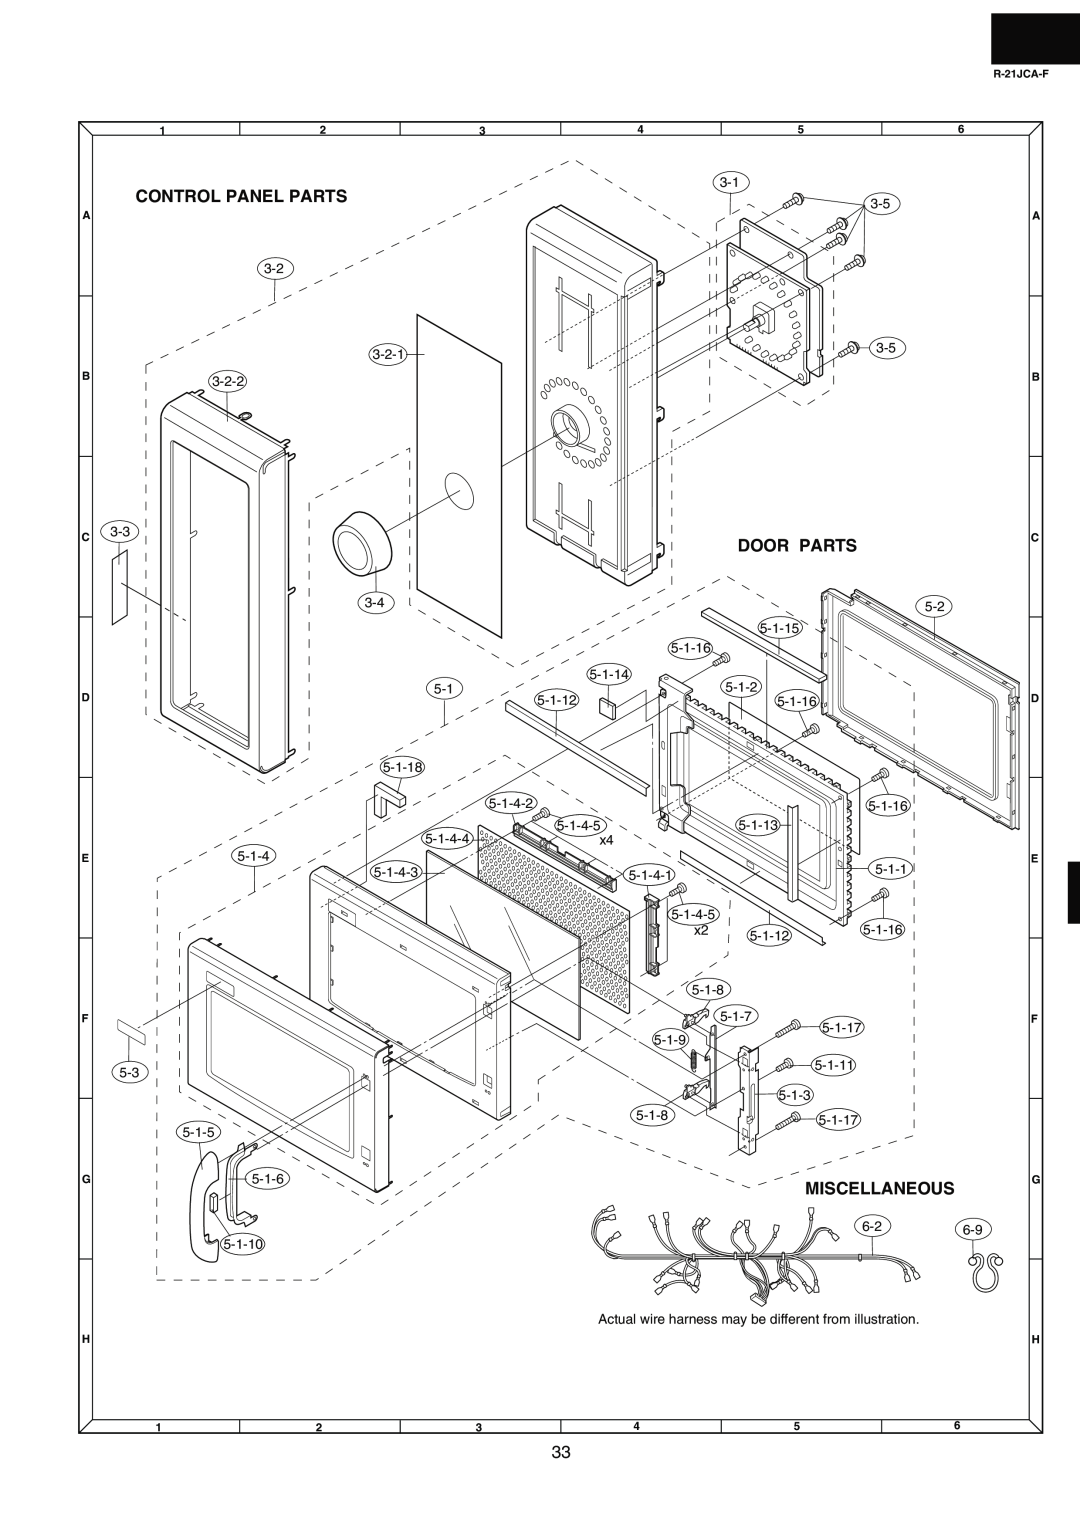 Sharp R-21JCA-F service manual Door Parts, Miscellaneous, Control Panel Parts 